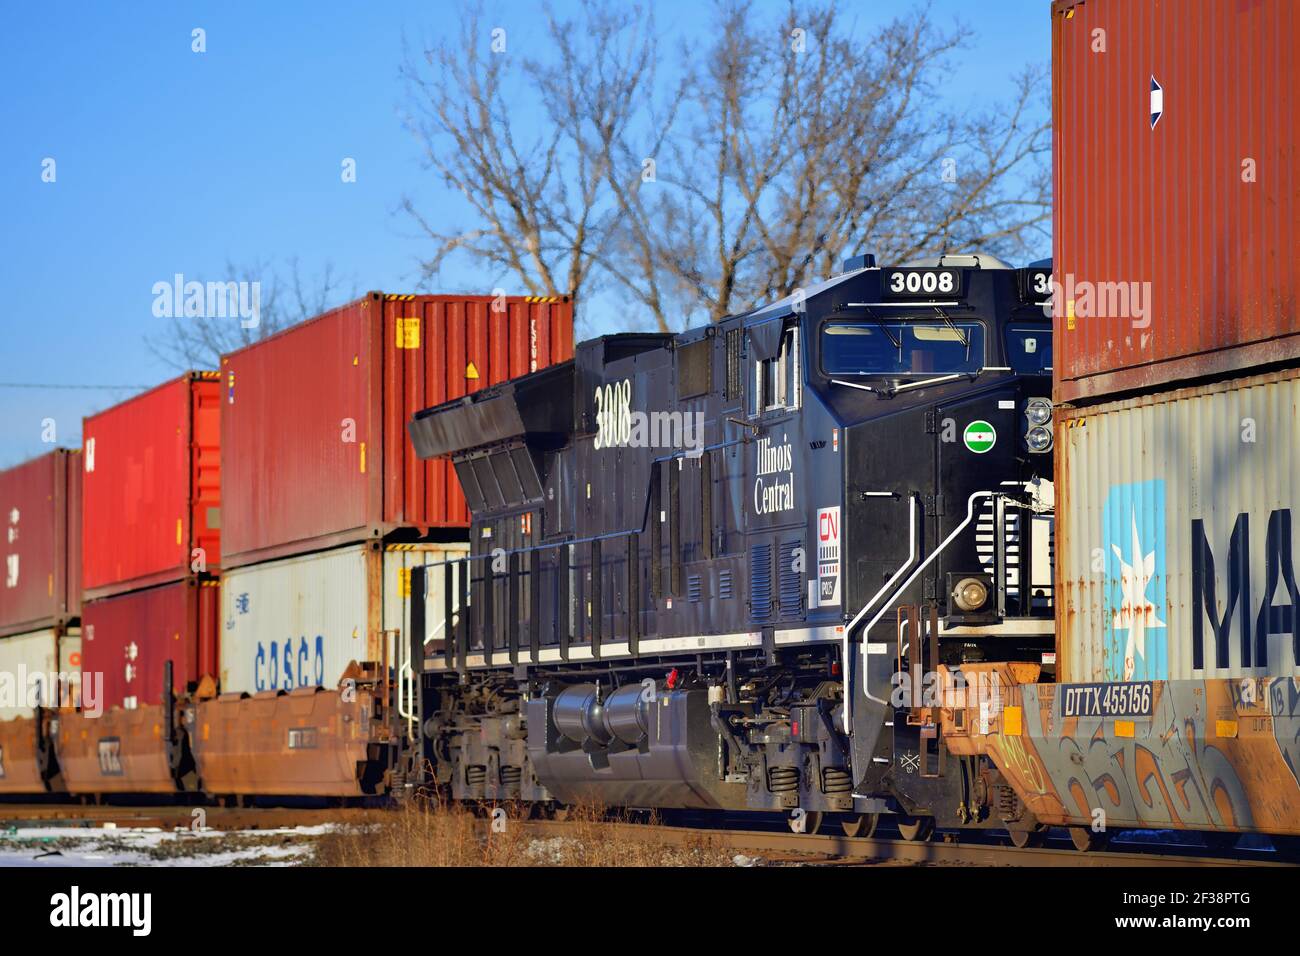 Bartlett, Illinois, USA. Eine Canadian National Railway Lokomotive fungiert als Distributed Power Unit (DPU) innerhalb eines Güterzuges. Stockfoto